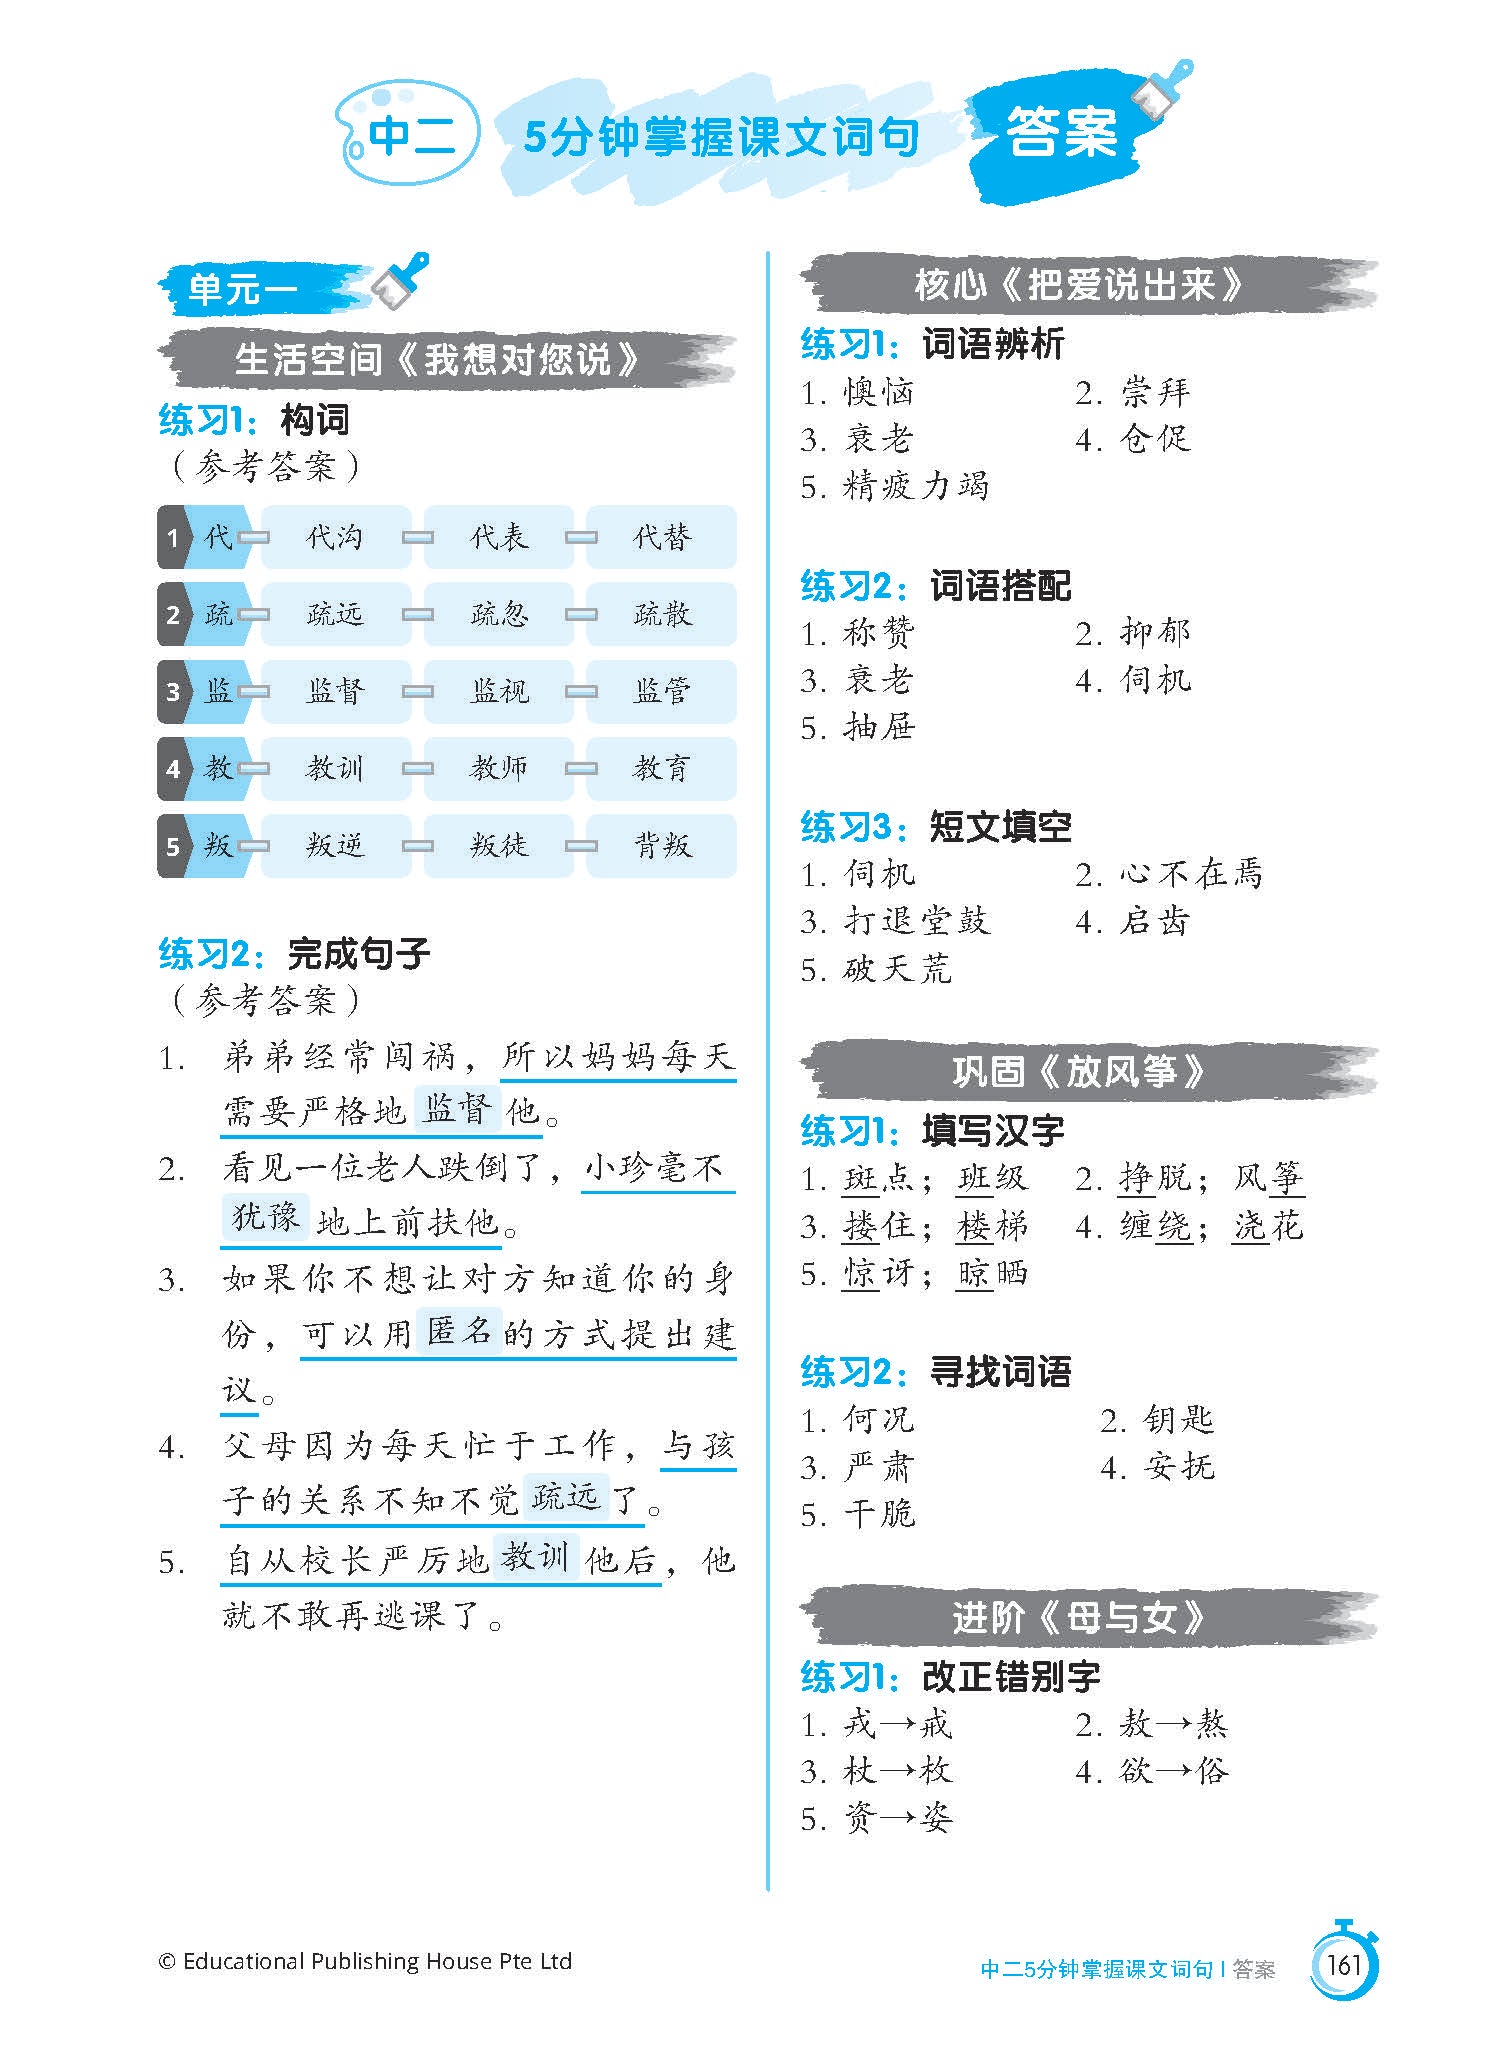 Secondary 2 (G3) Chinese Vocabulary & Sentences in 5 Mins 5分钟掌握课文词句